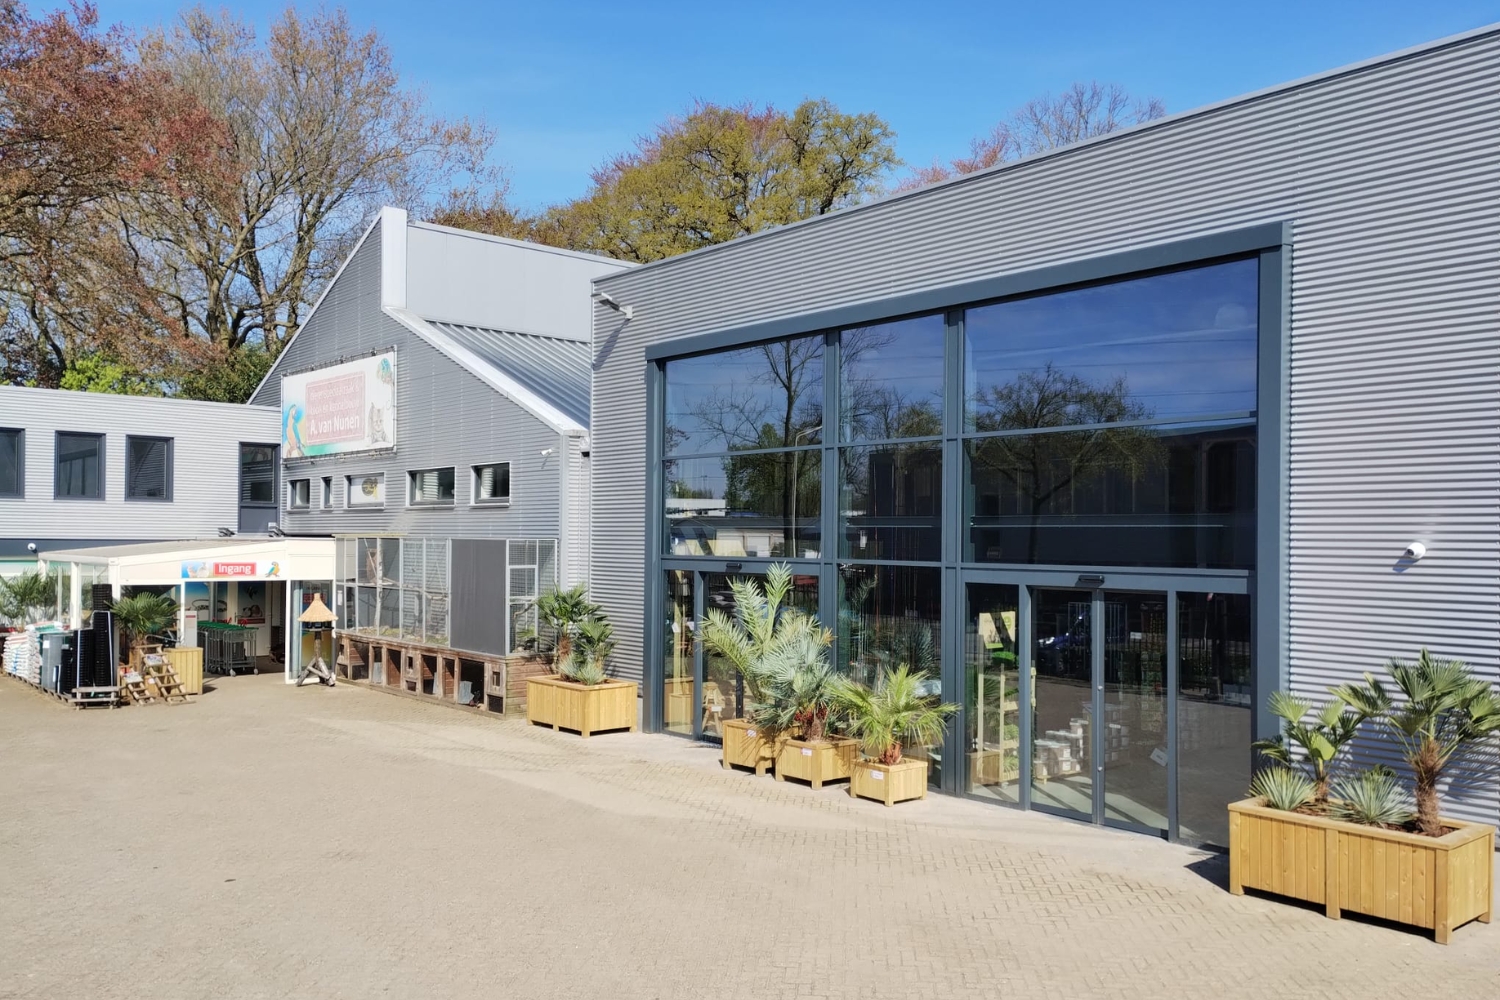 Over Dierencompleet.nl - Dierenspeciaalzaak van Nunen winkel in Oirschot